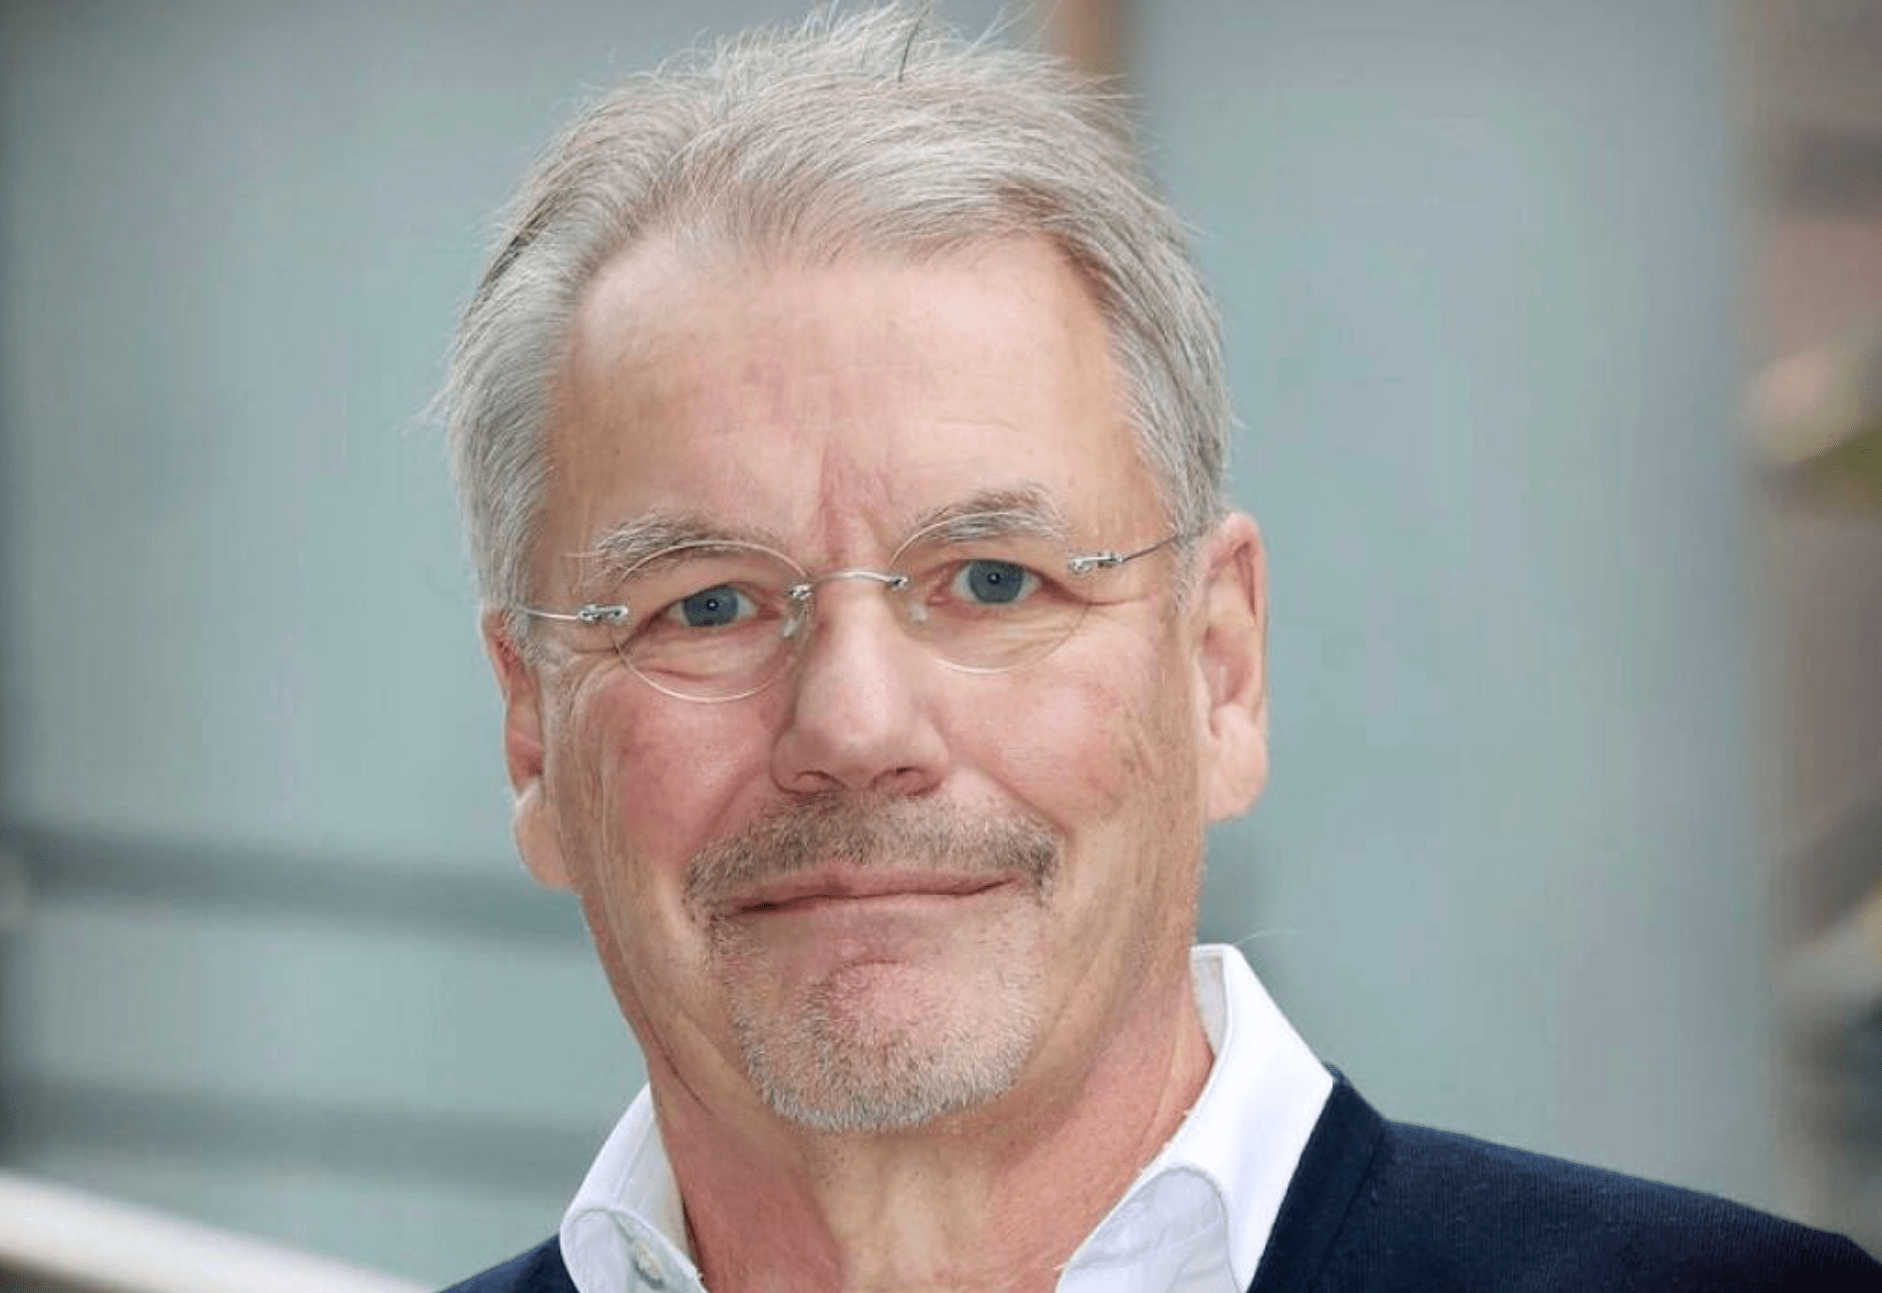 Olli-Pekka Kallasvuo joins Safegrid’s board of directors as chairman